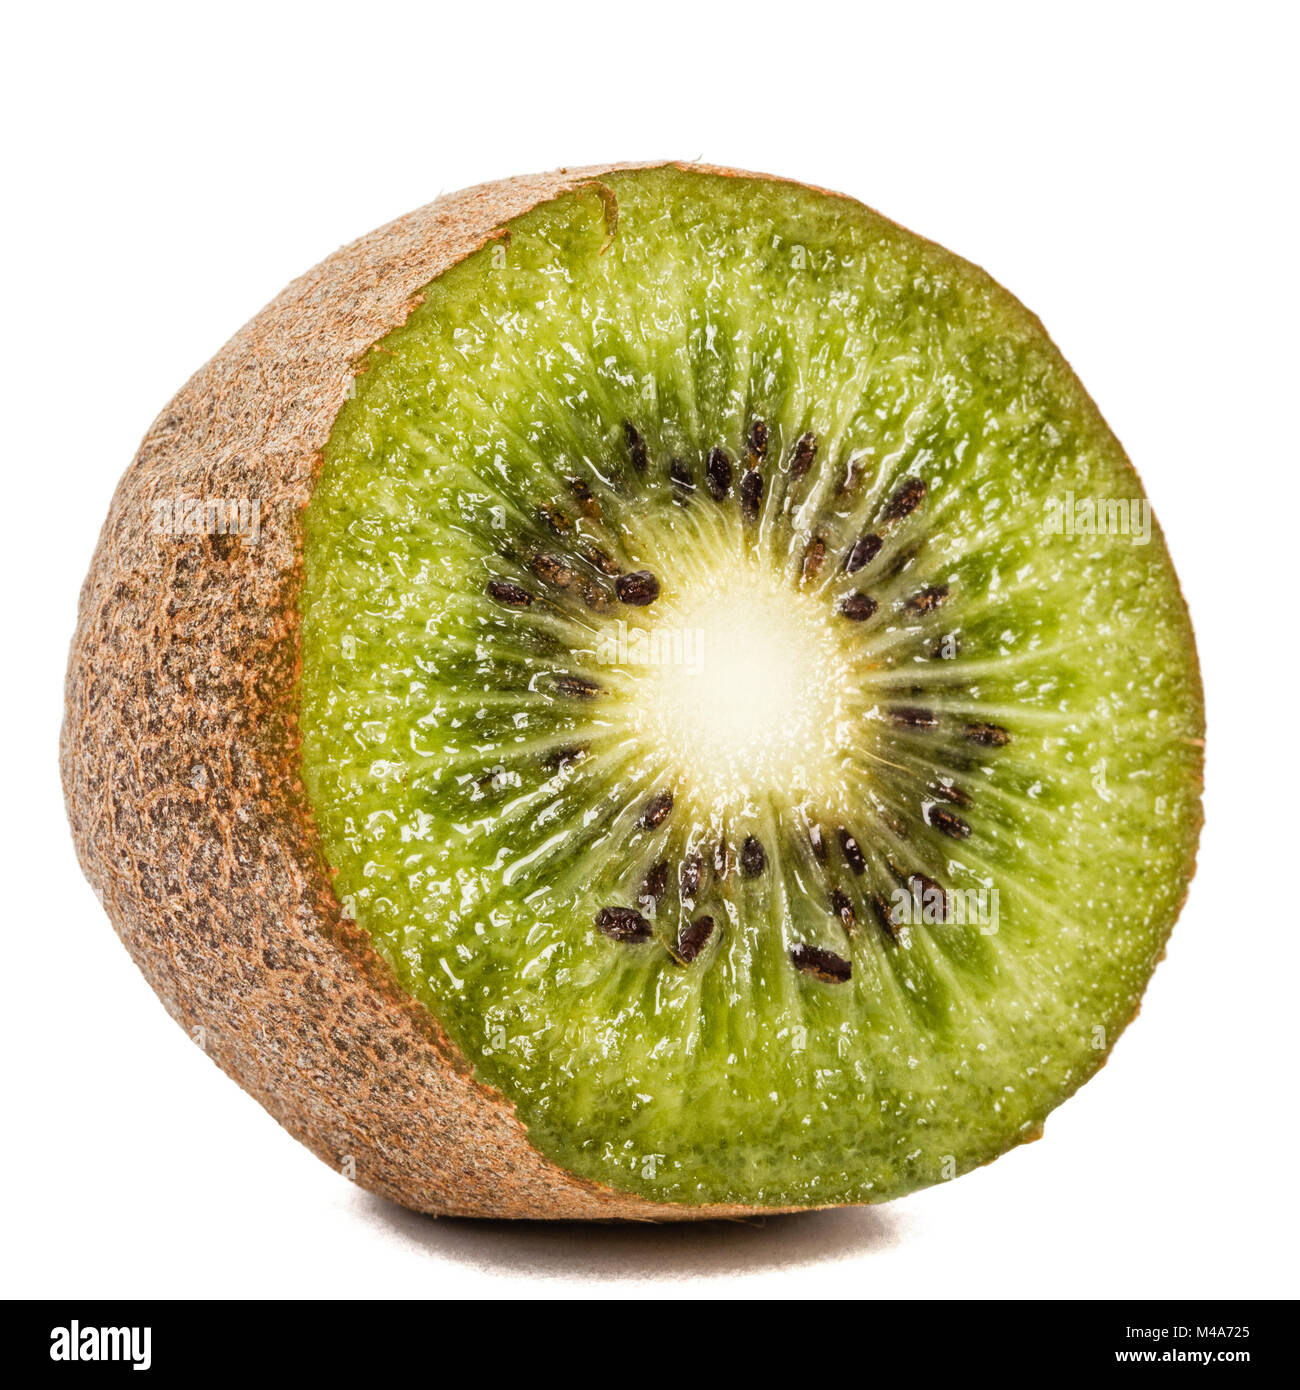 One kiwi fruit, isolated on white background Stock Photo